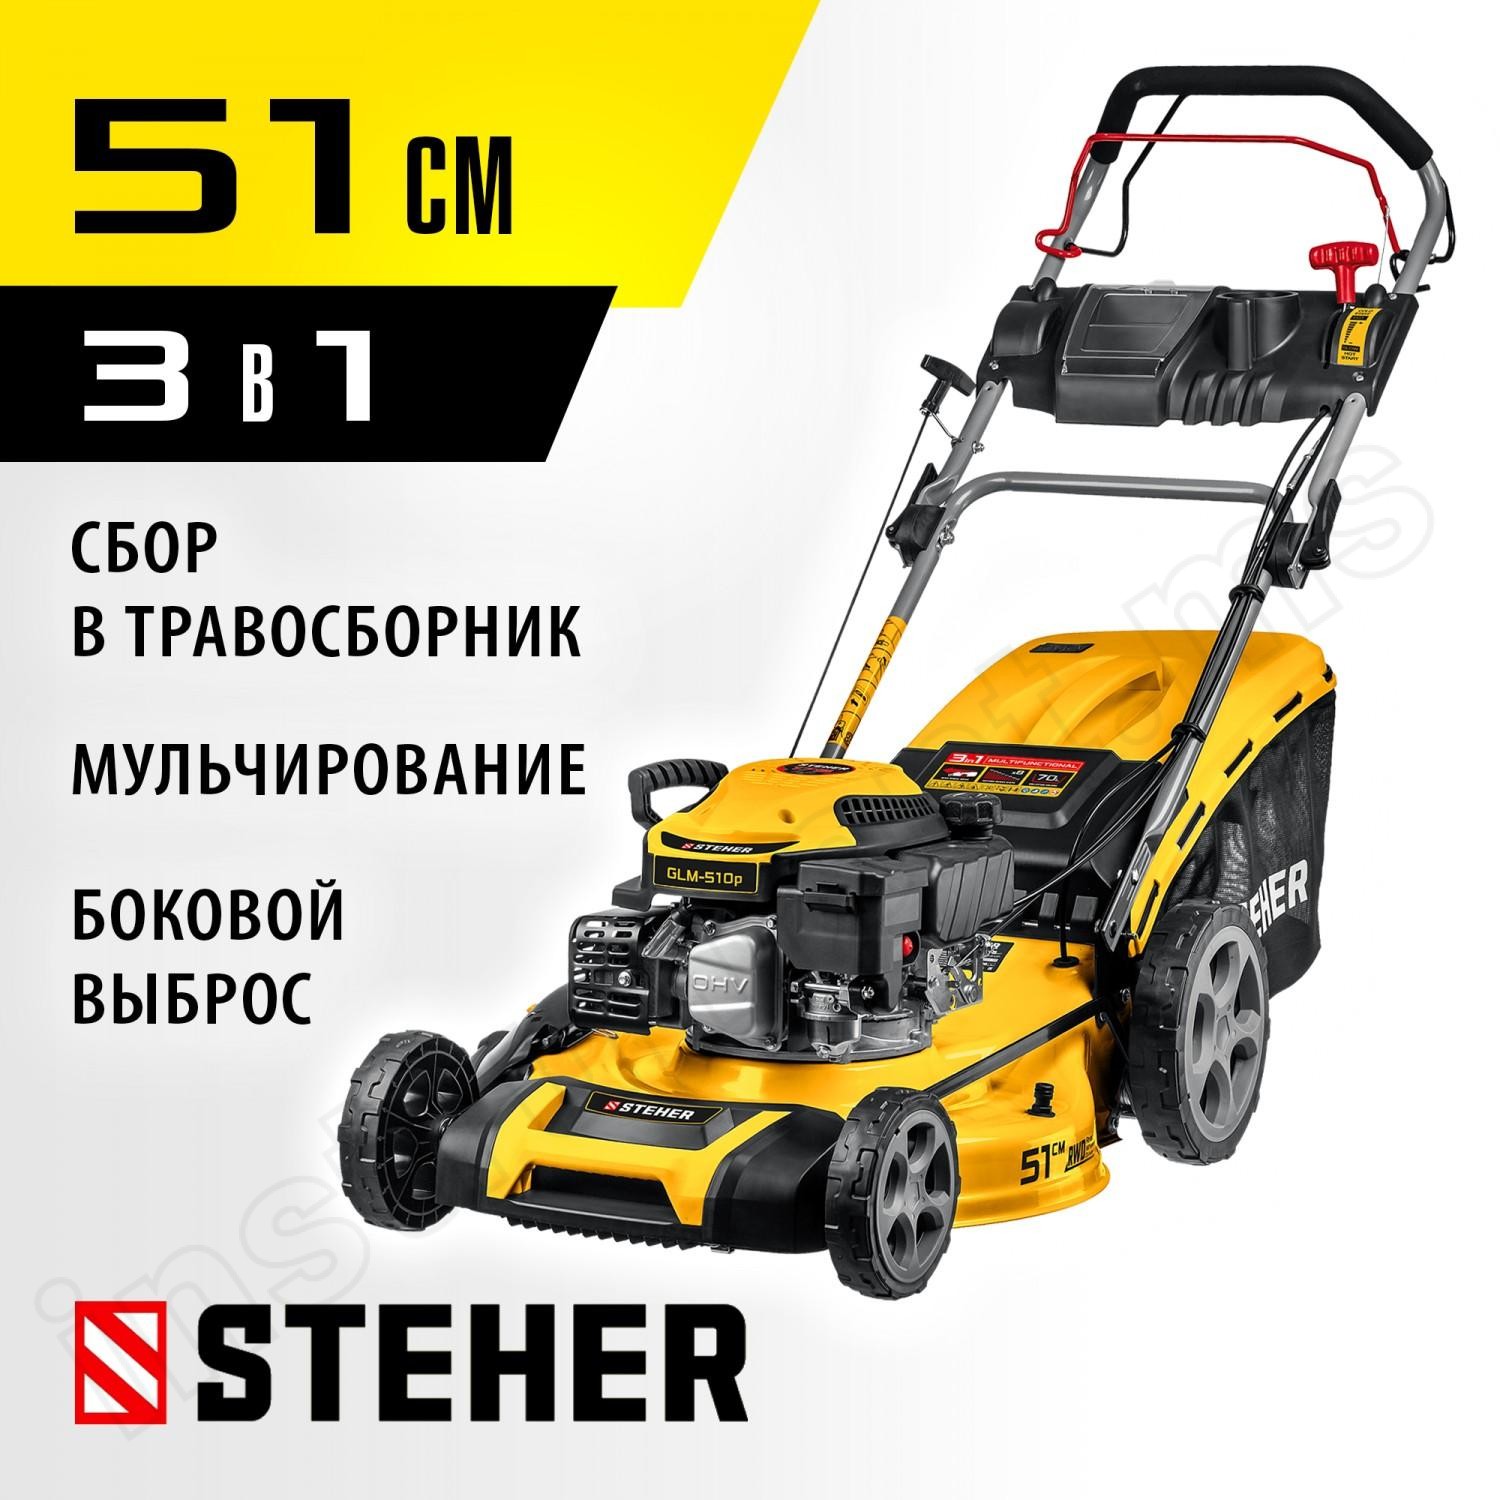 STEHER 4.4 кВт, 6.5 л.с., 510 мм, самоходная газонокосилка бензиновая GLM-510p - фото 1